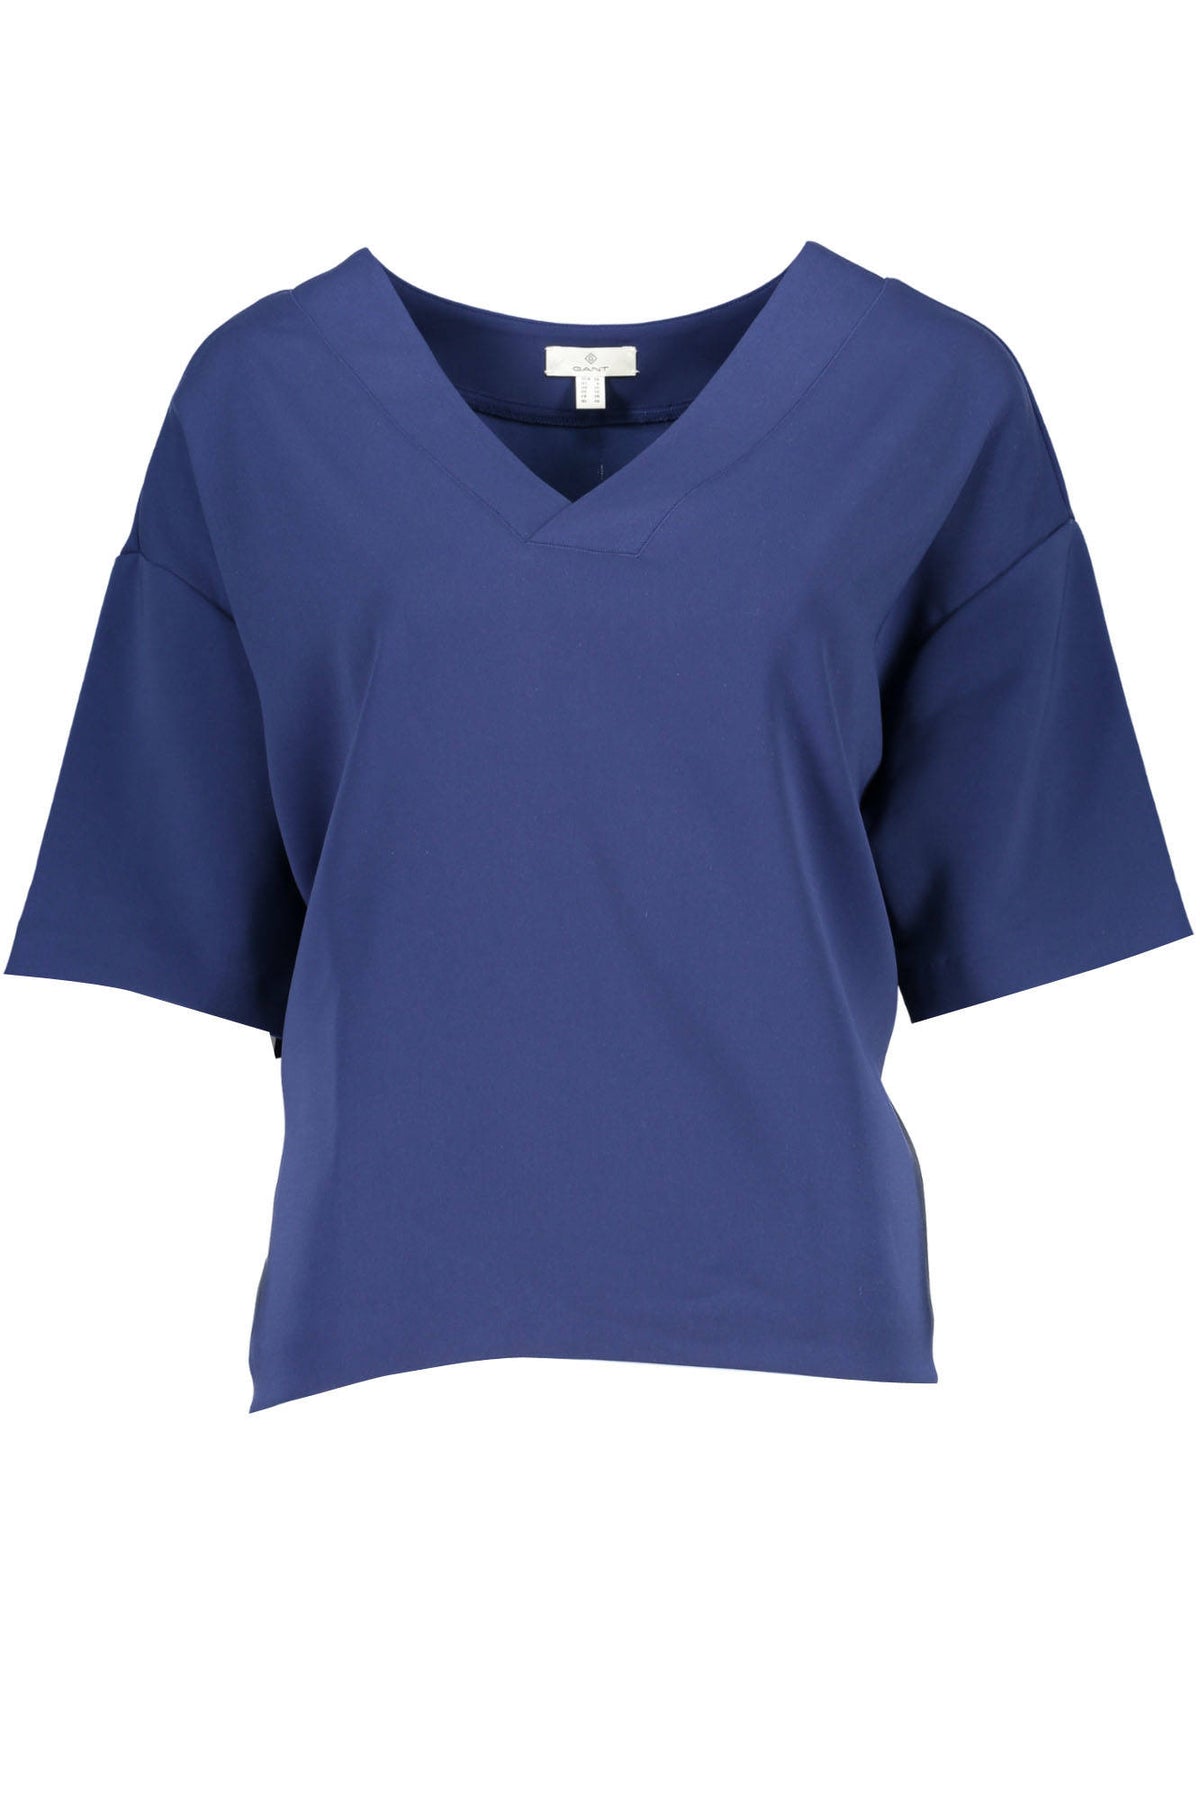 Gant Damen T-Shirt Sweatshirt mit V-Ausschnitt, kurzarm